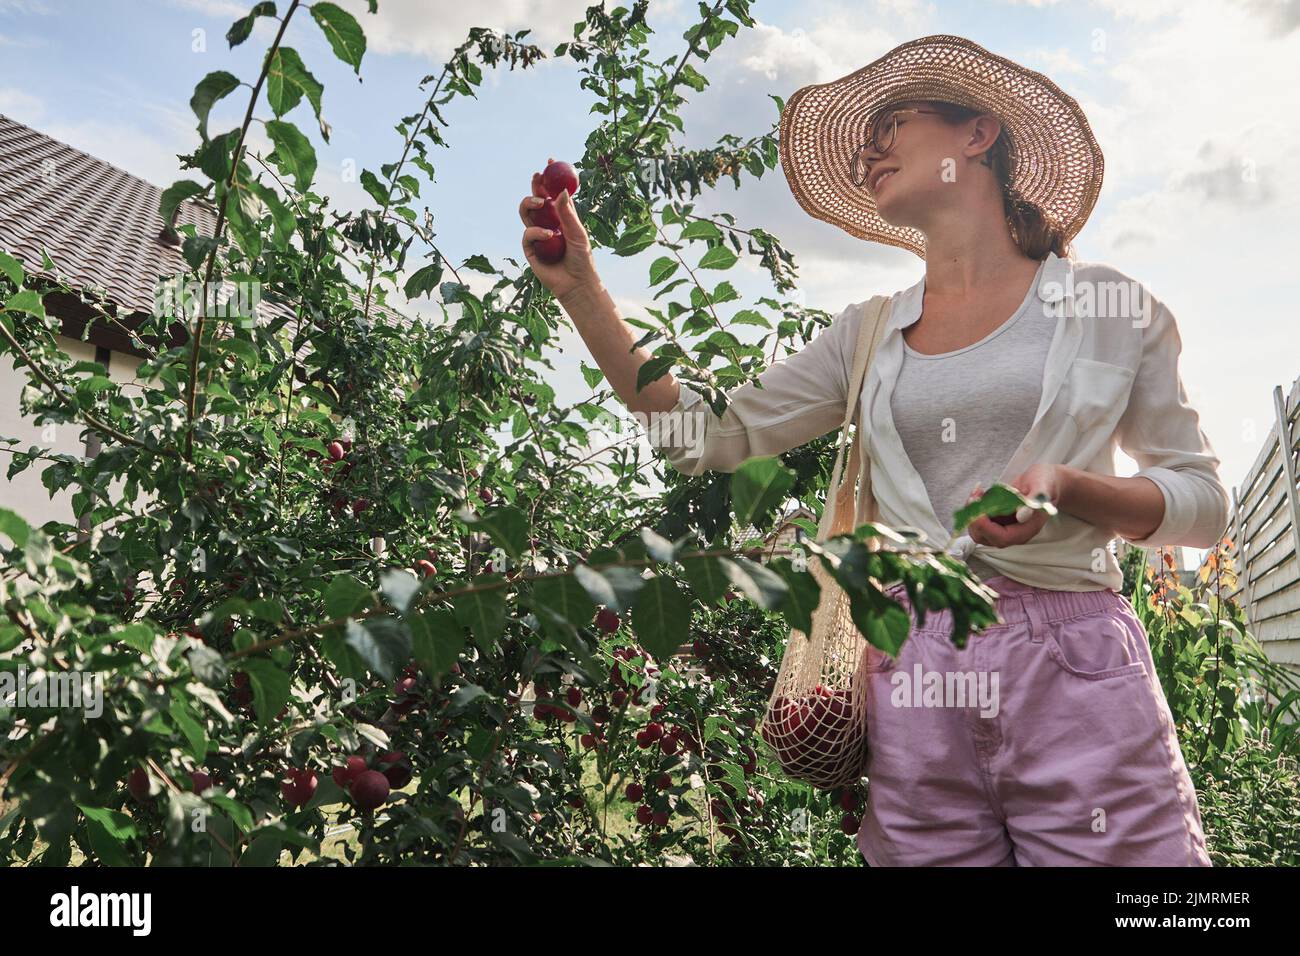 Joven jardinero recoger ciruelas en cadena eco bolsa de malla en el jardín de su familia patio trasero Foto de stock